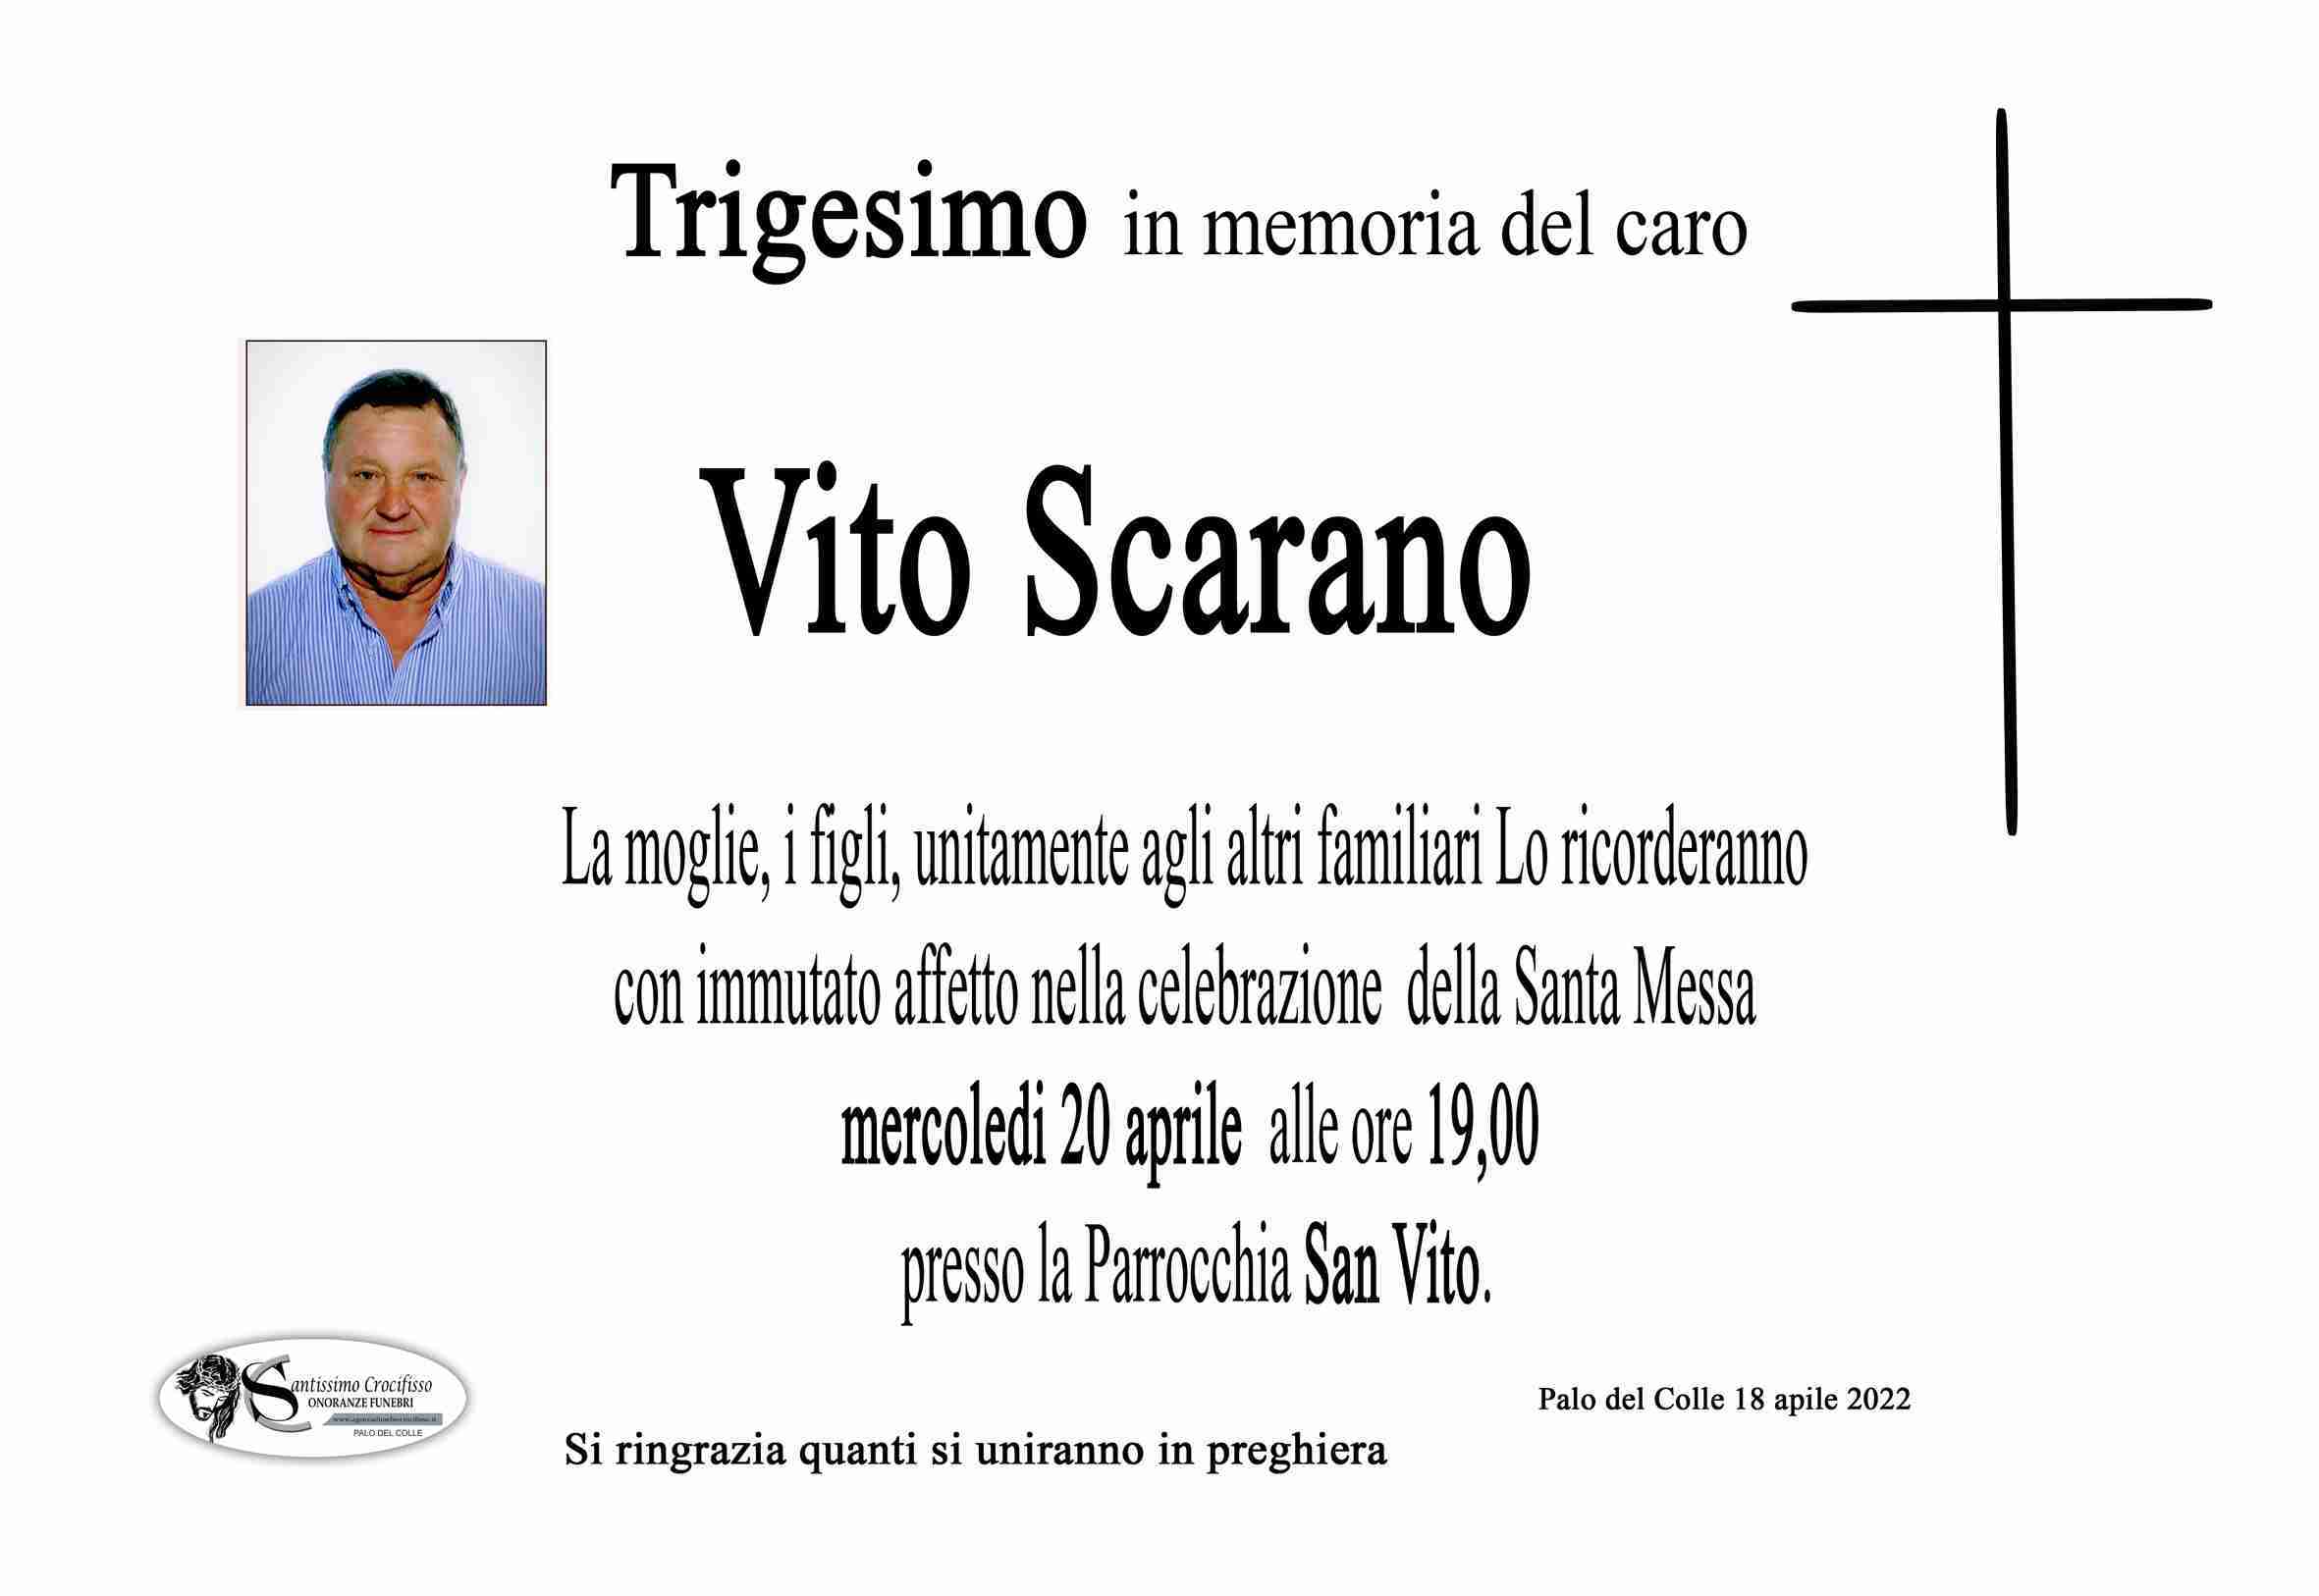 Vito Scarano